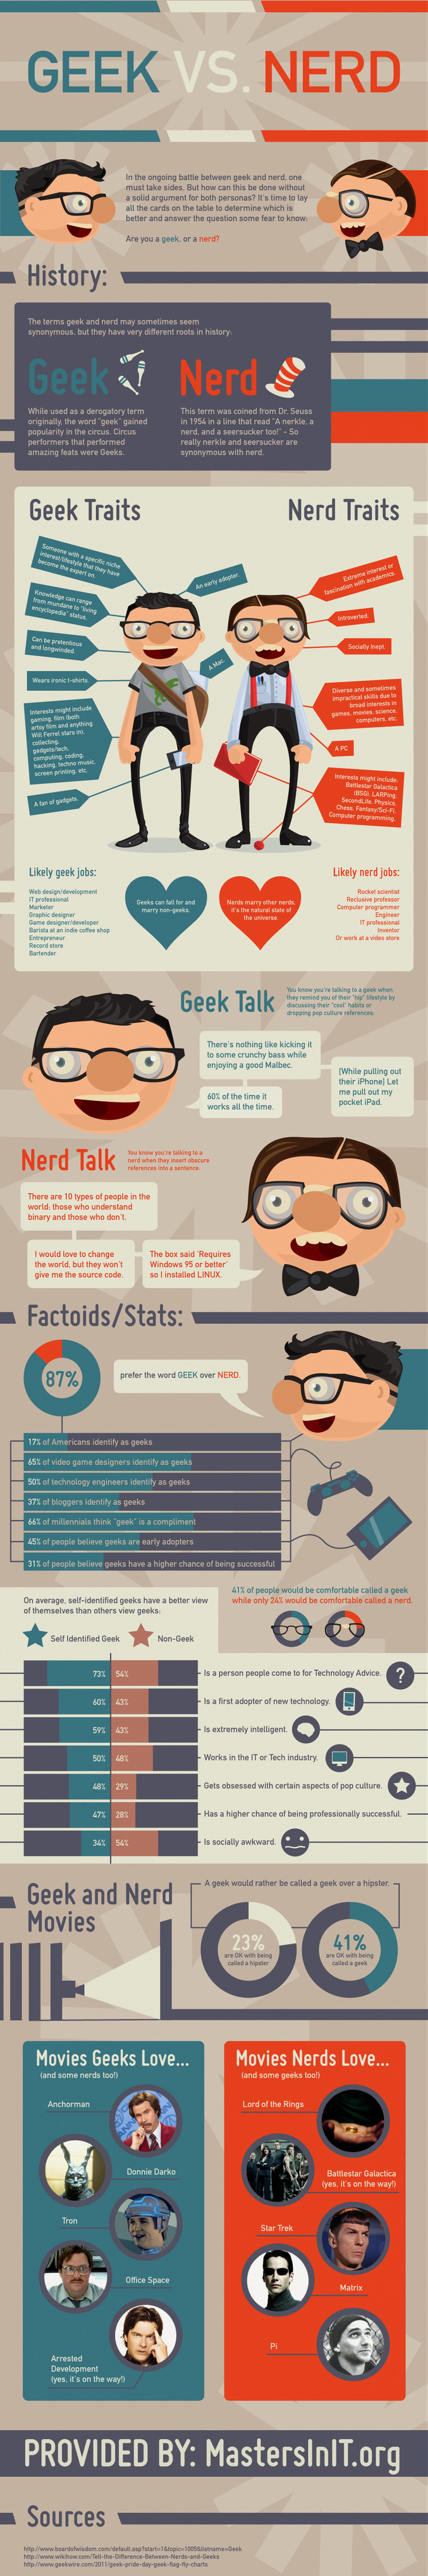 Tout ce que vous avez toujours voulu savoir sur les geeks et les nerds.